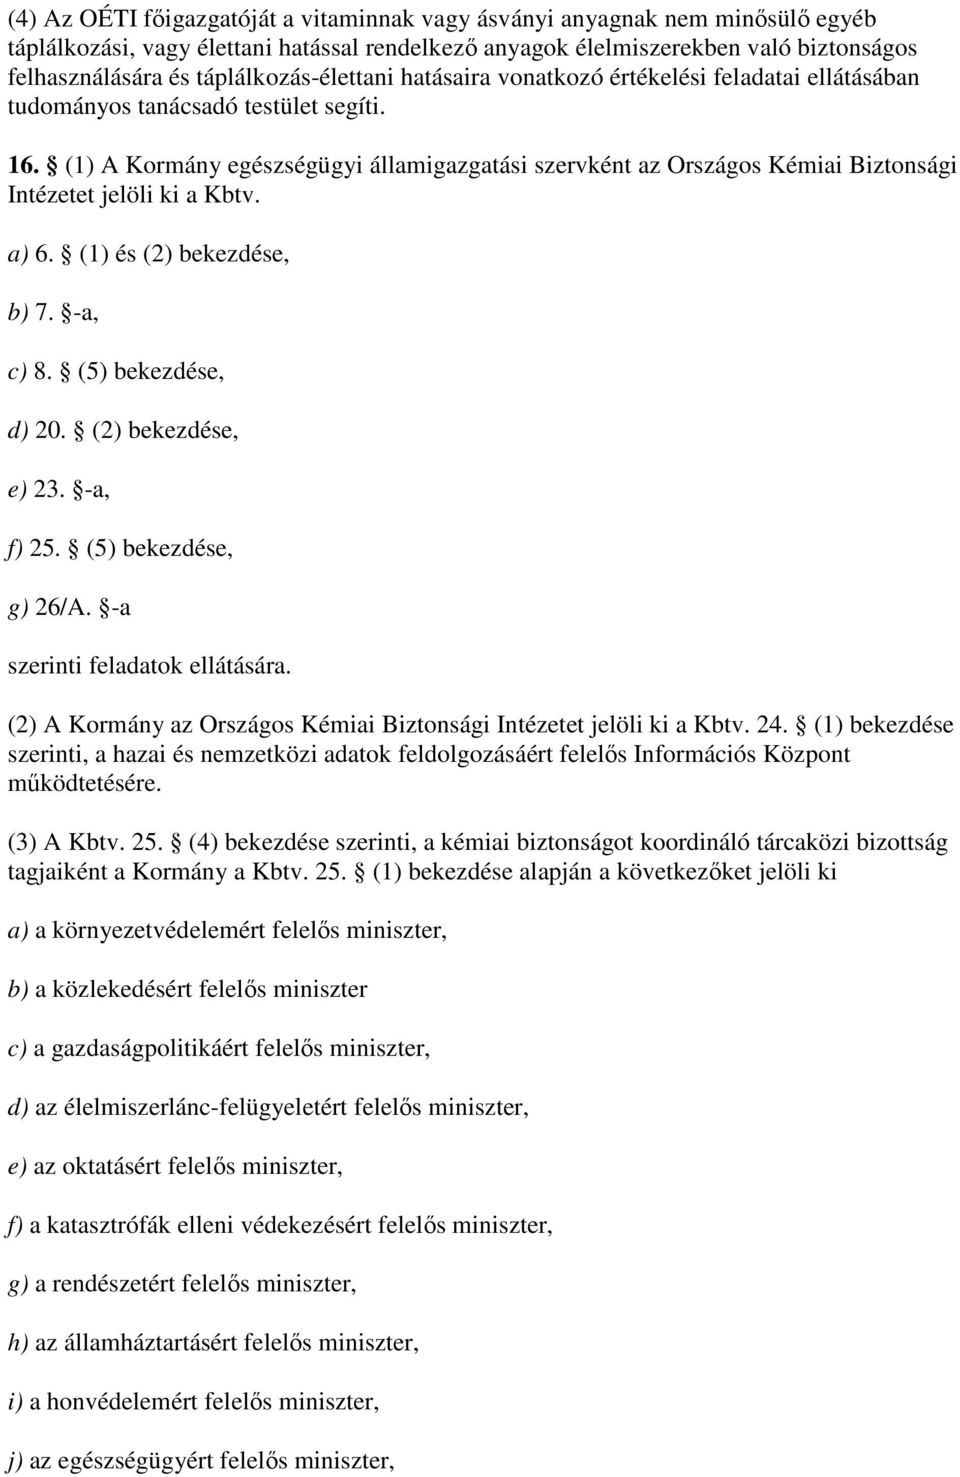 (1) A Kormány egészségügyi államigazgatási szervként az Országos Kémiai Biztonsági et jelöli ki a Kbtv. a) 6. (1) és (2) bekezdése, b) 7. -a, c) 8. (5) bekezdése, d) 20. (2) bekezdése, e) 23.